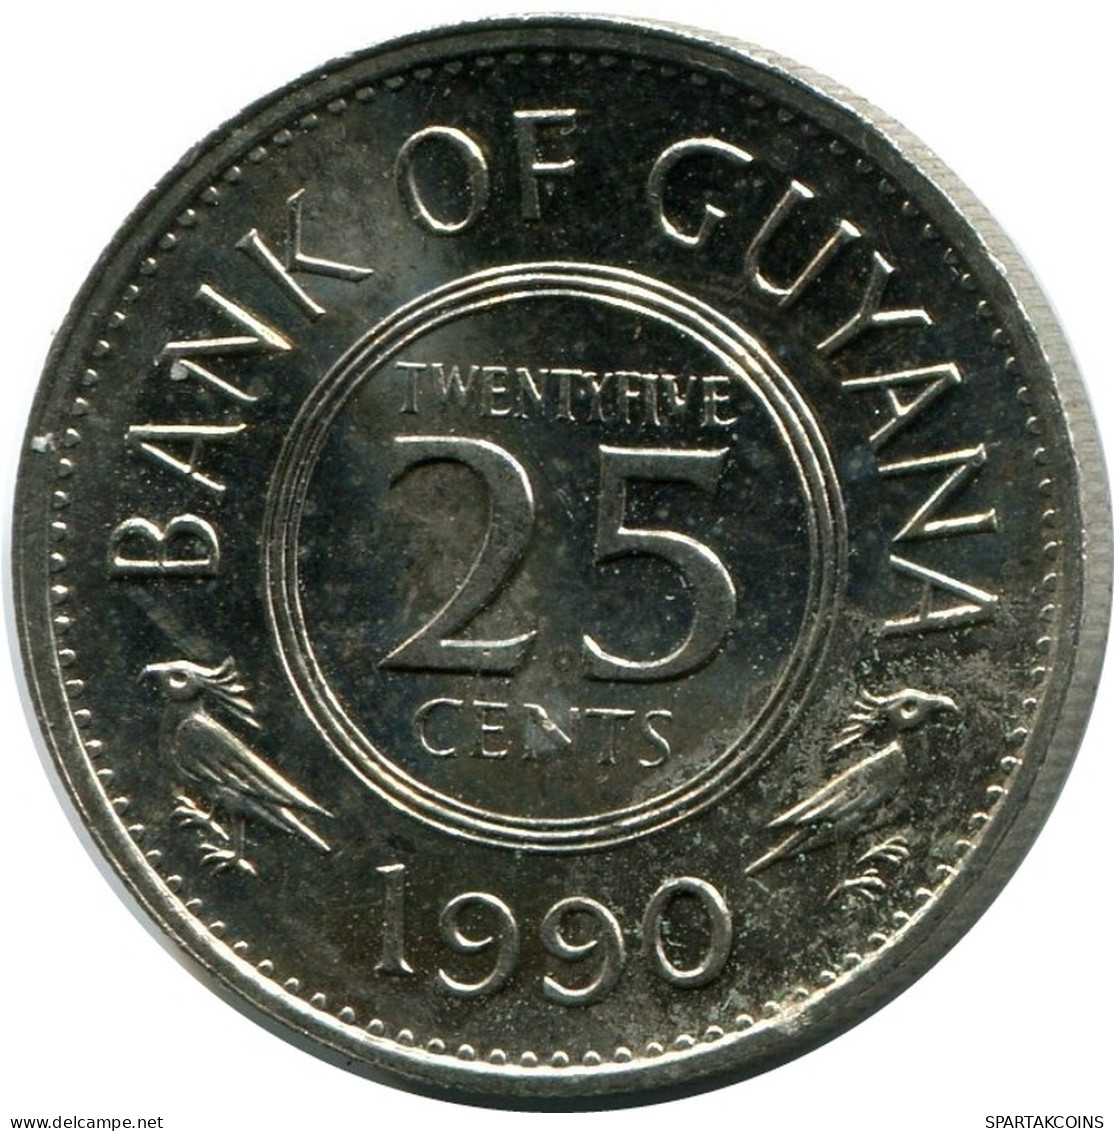 25 CENTS 1990 GUYANA UNC Coin #M10274.U - Guyana